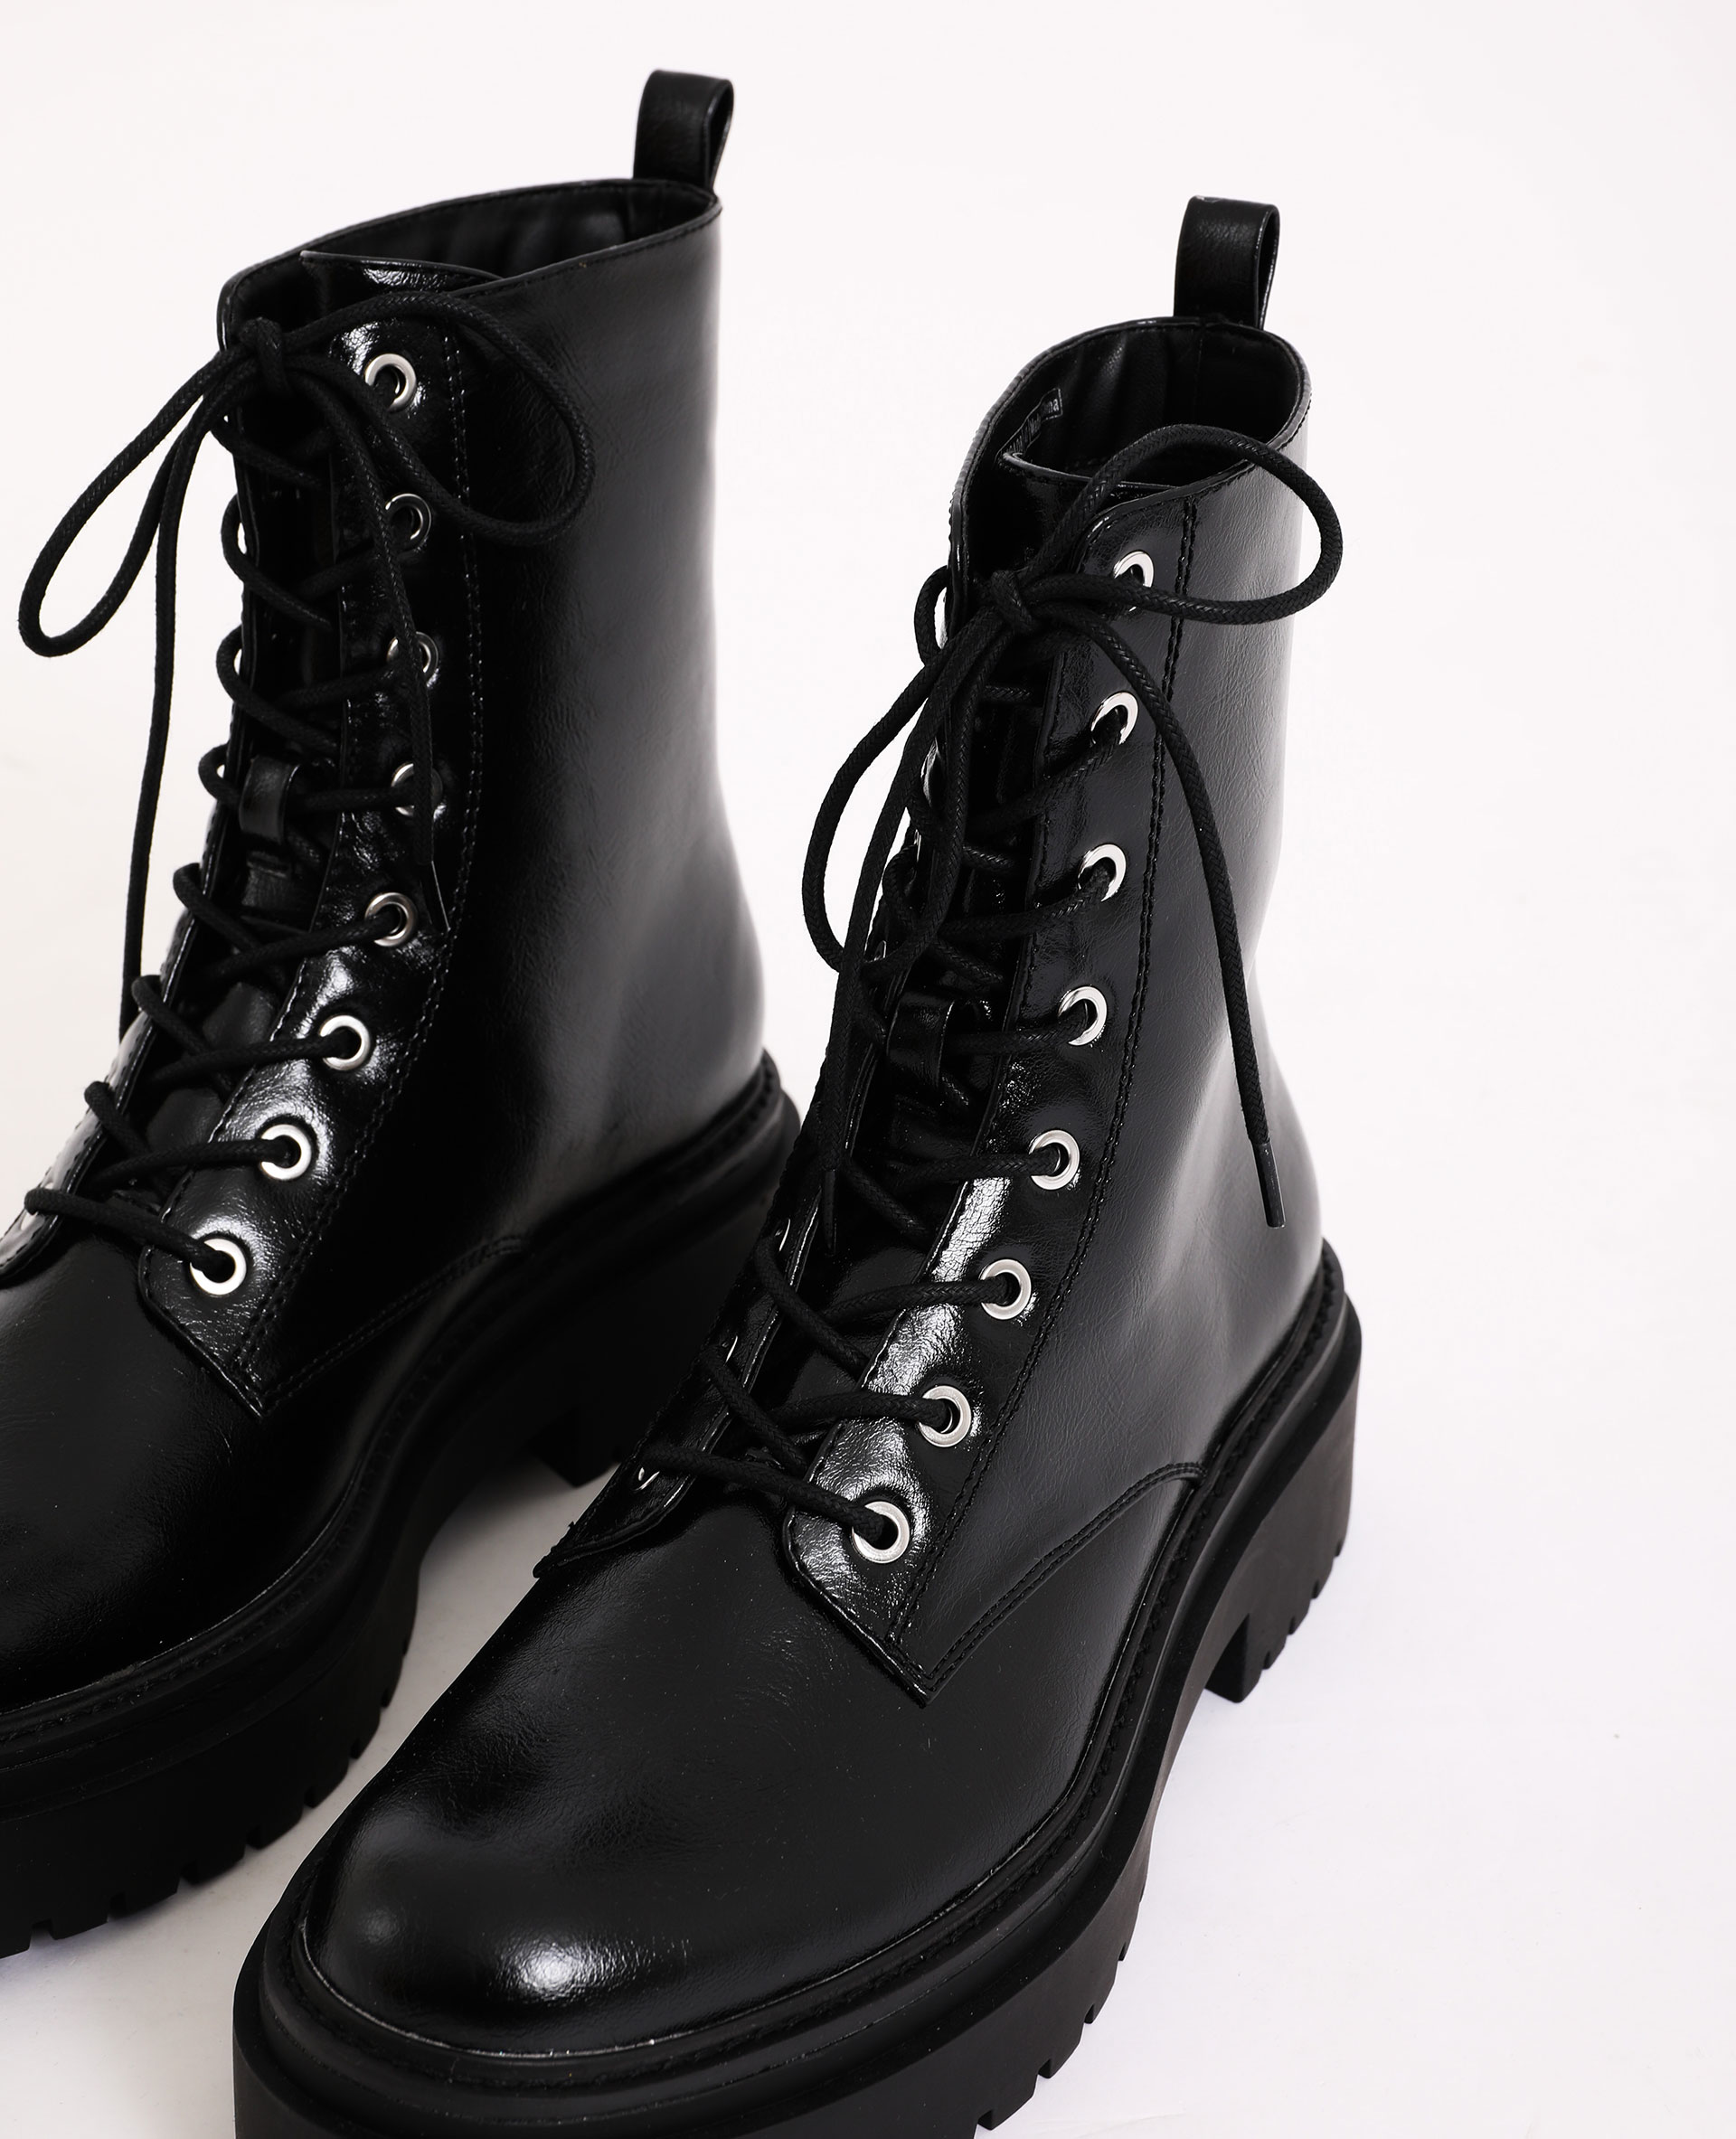 Boots rock noir - Pimkie